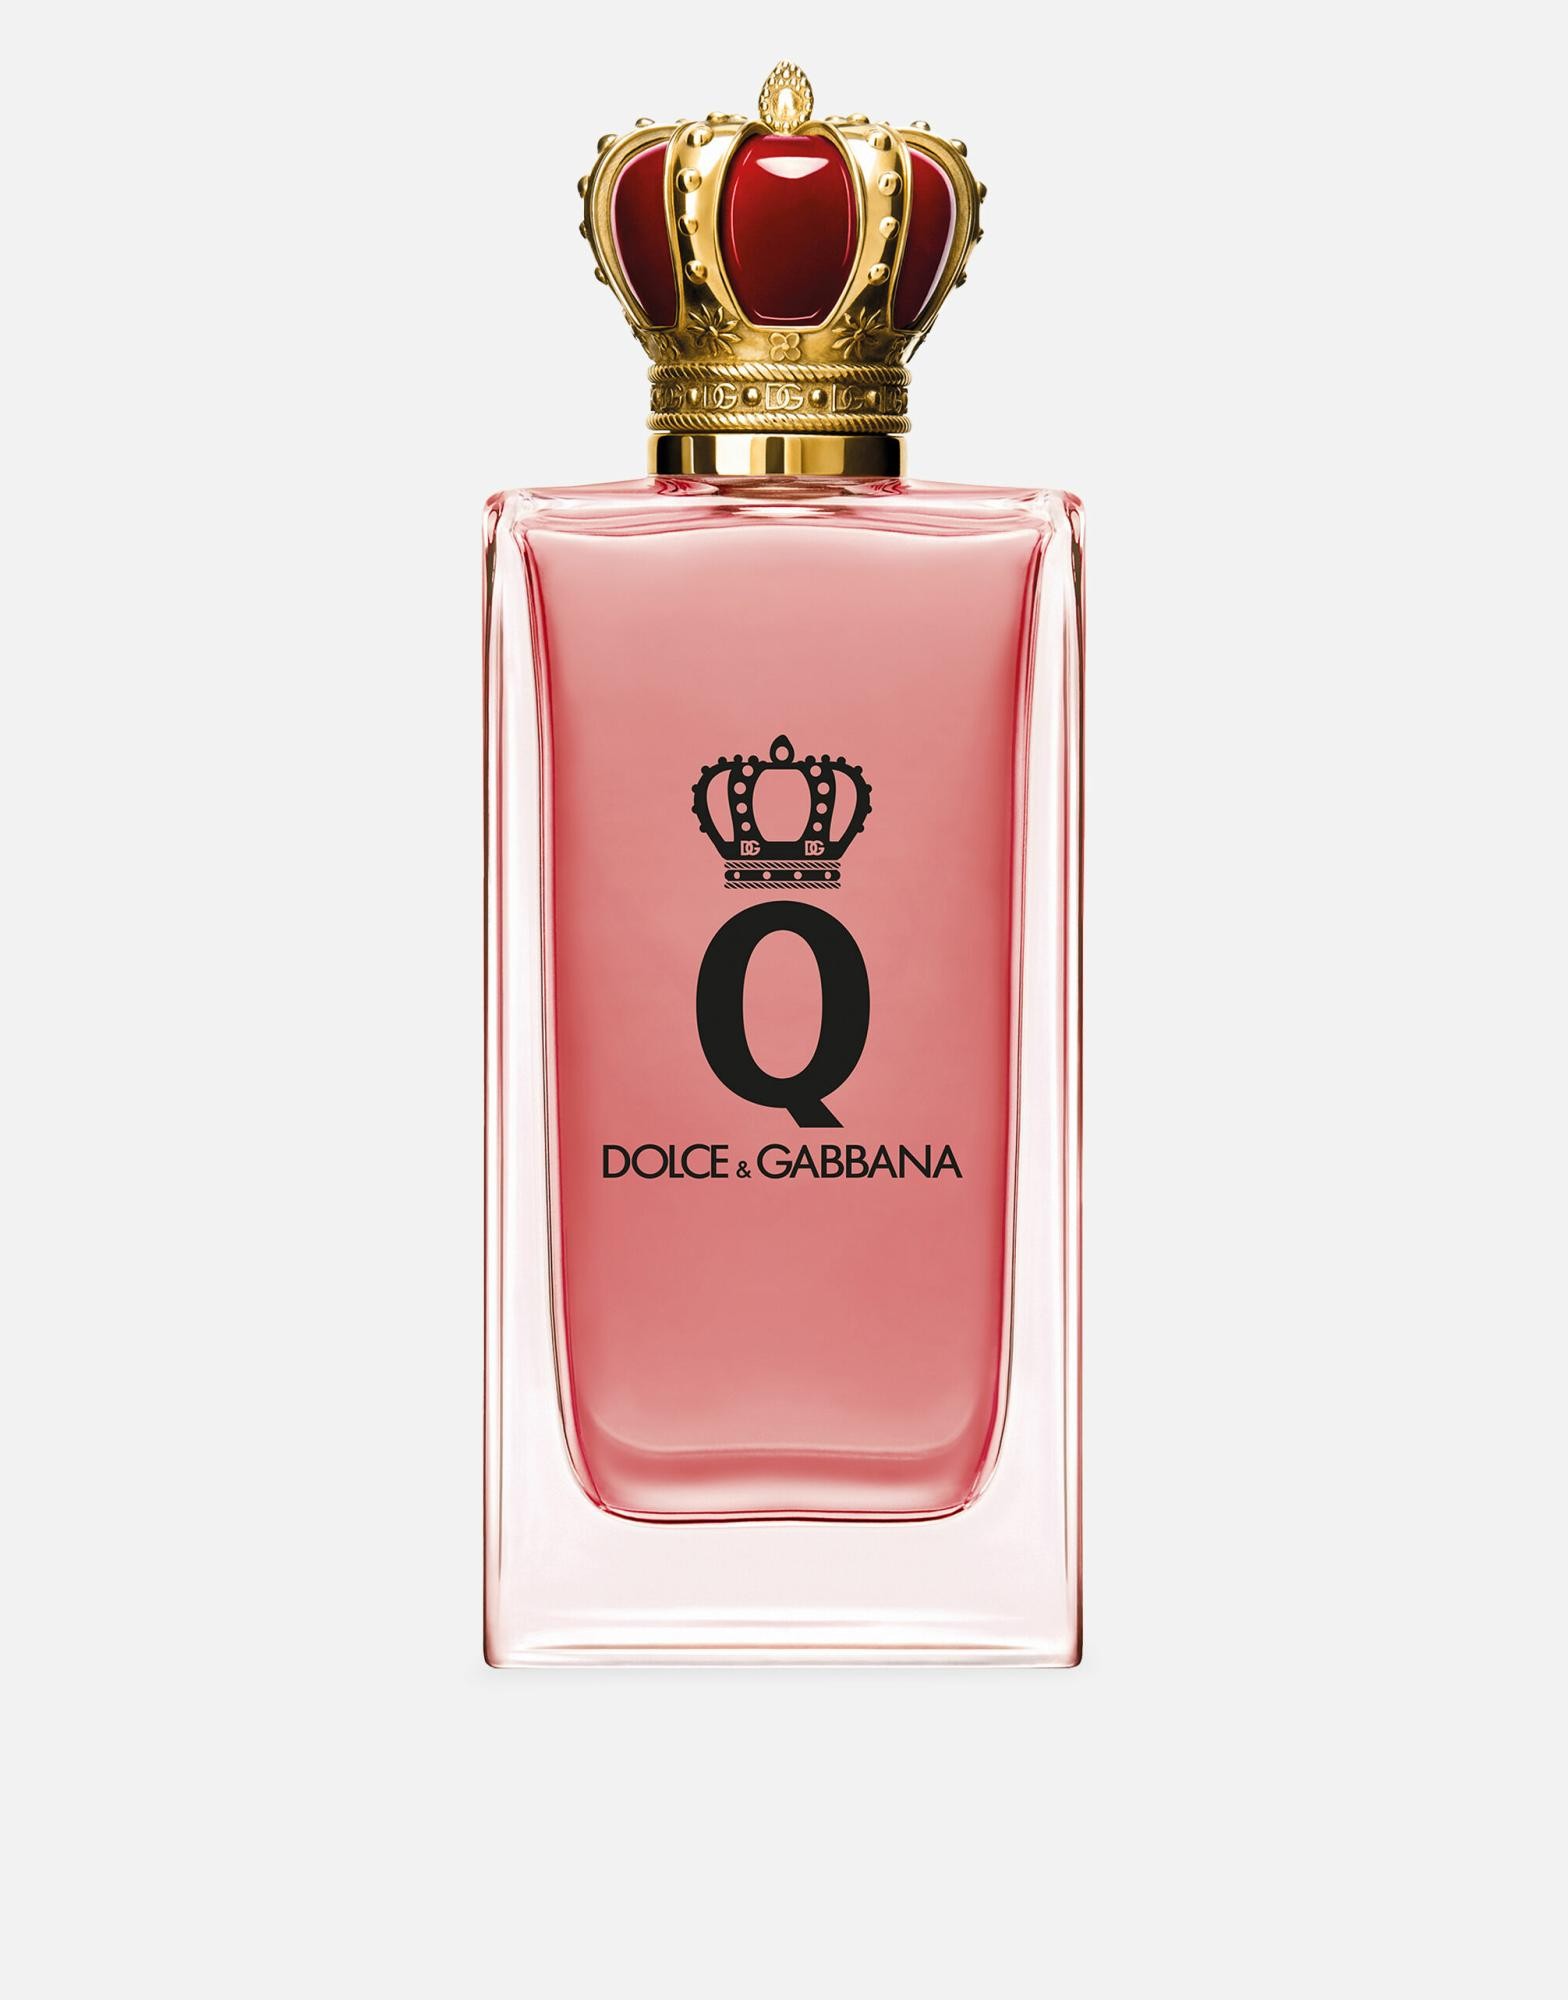 Dolce&Gabbana Q Eau De Parfum Intense 30ml